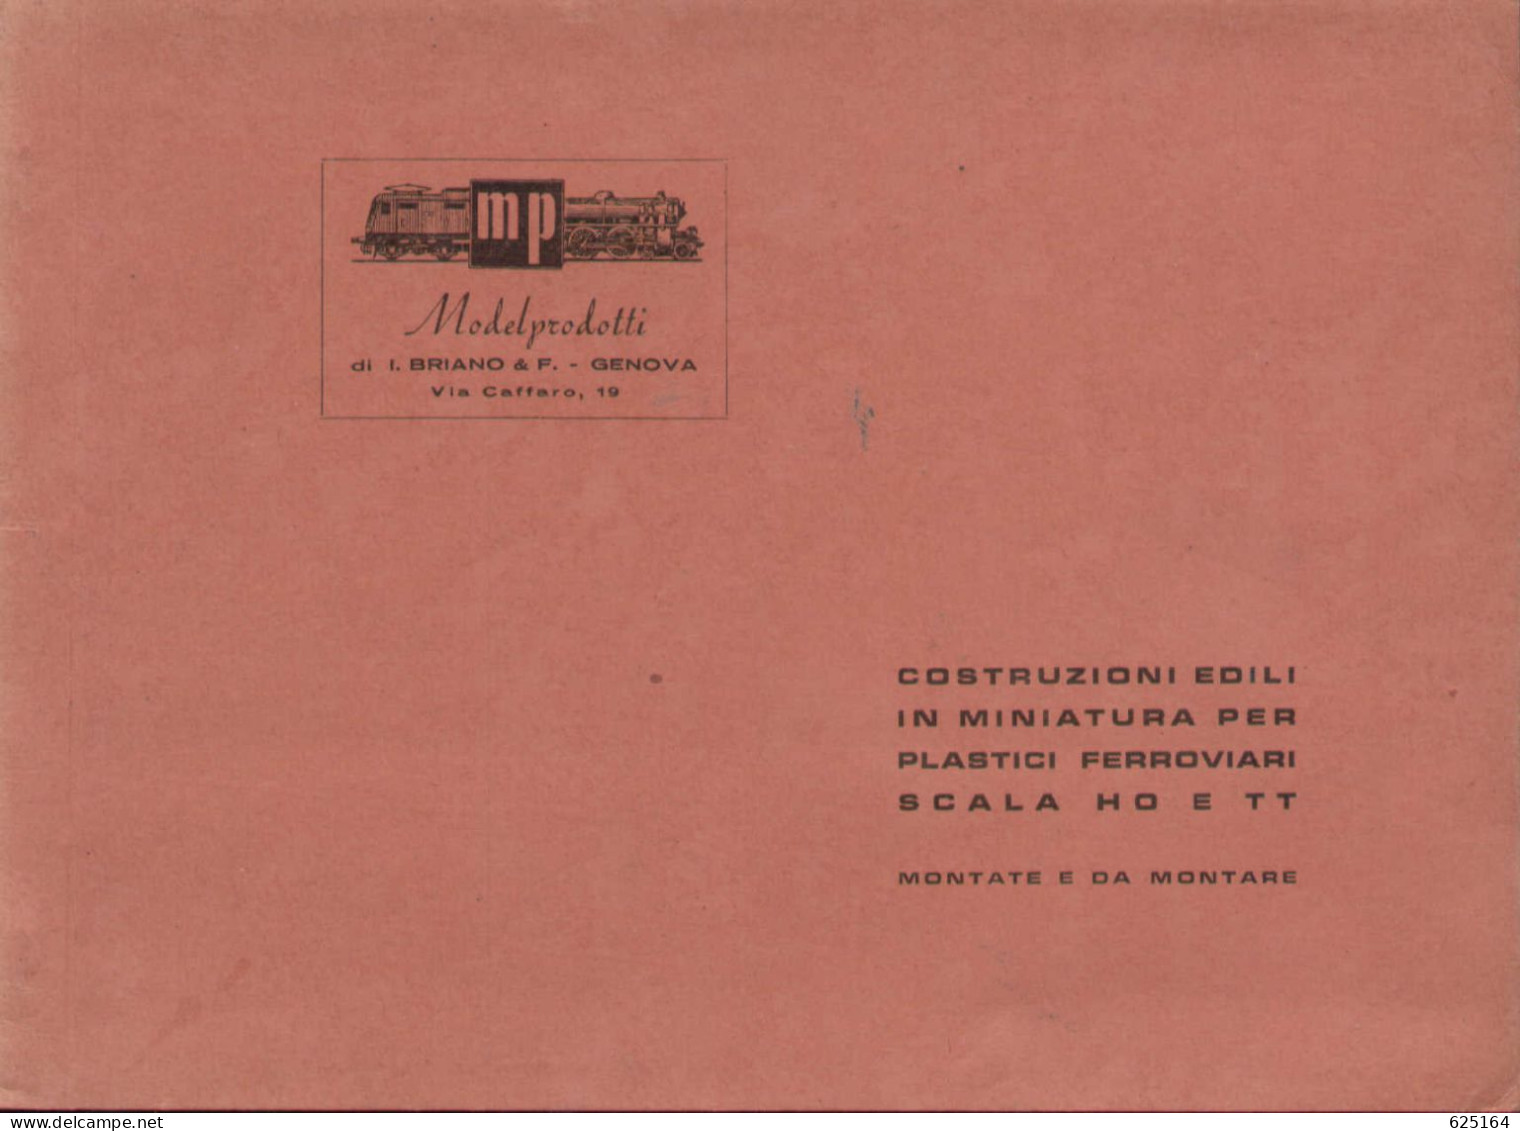 Catalogue MP ModelProdotti 1955? Ed. Italo Briano Genova Accessori HO  - En Italien - Unclassified